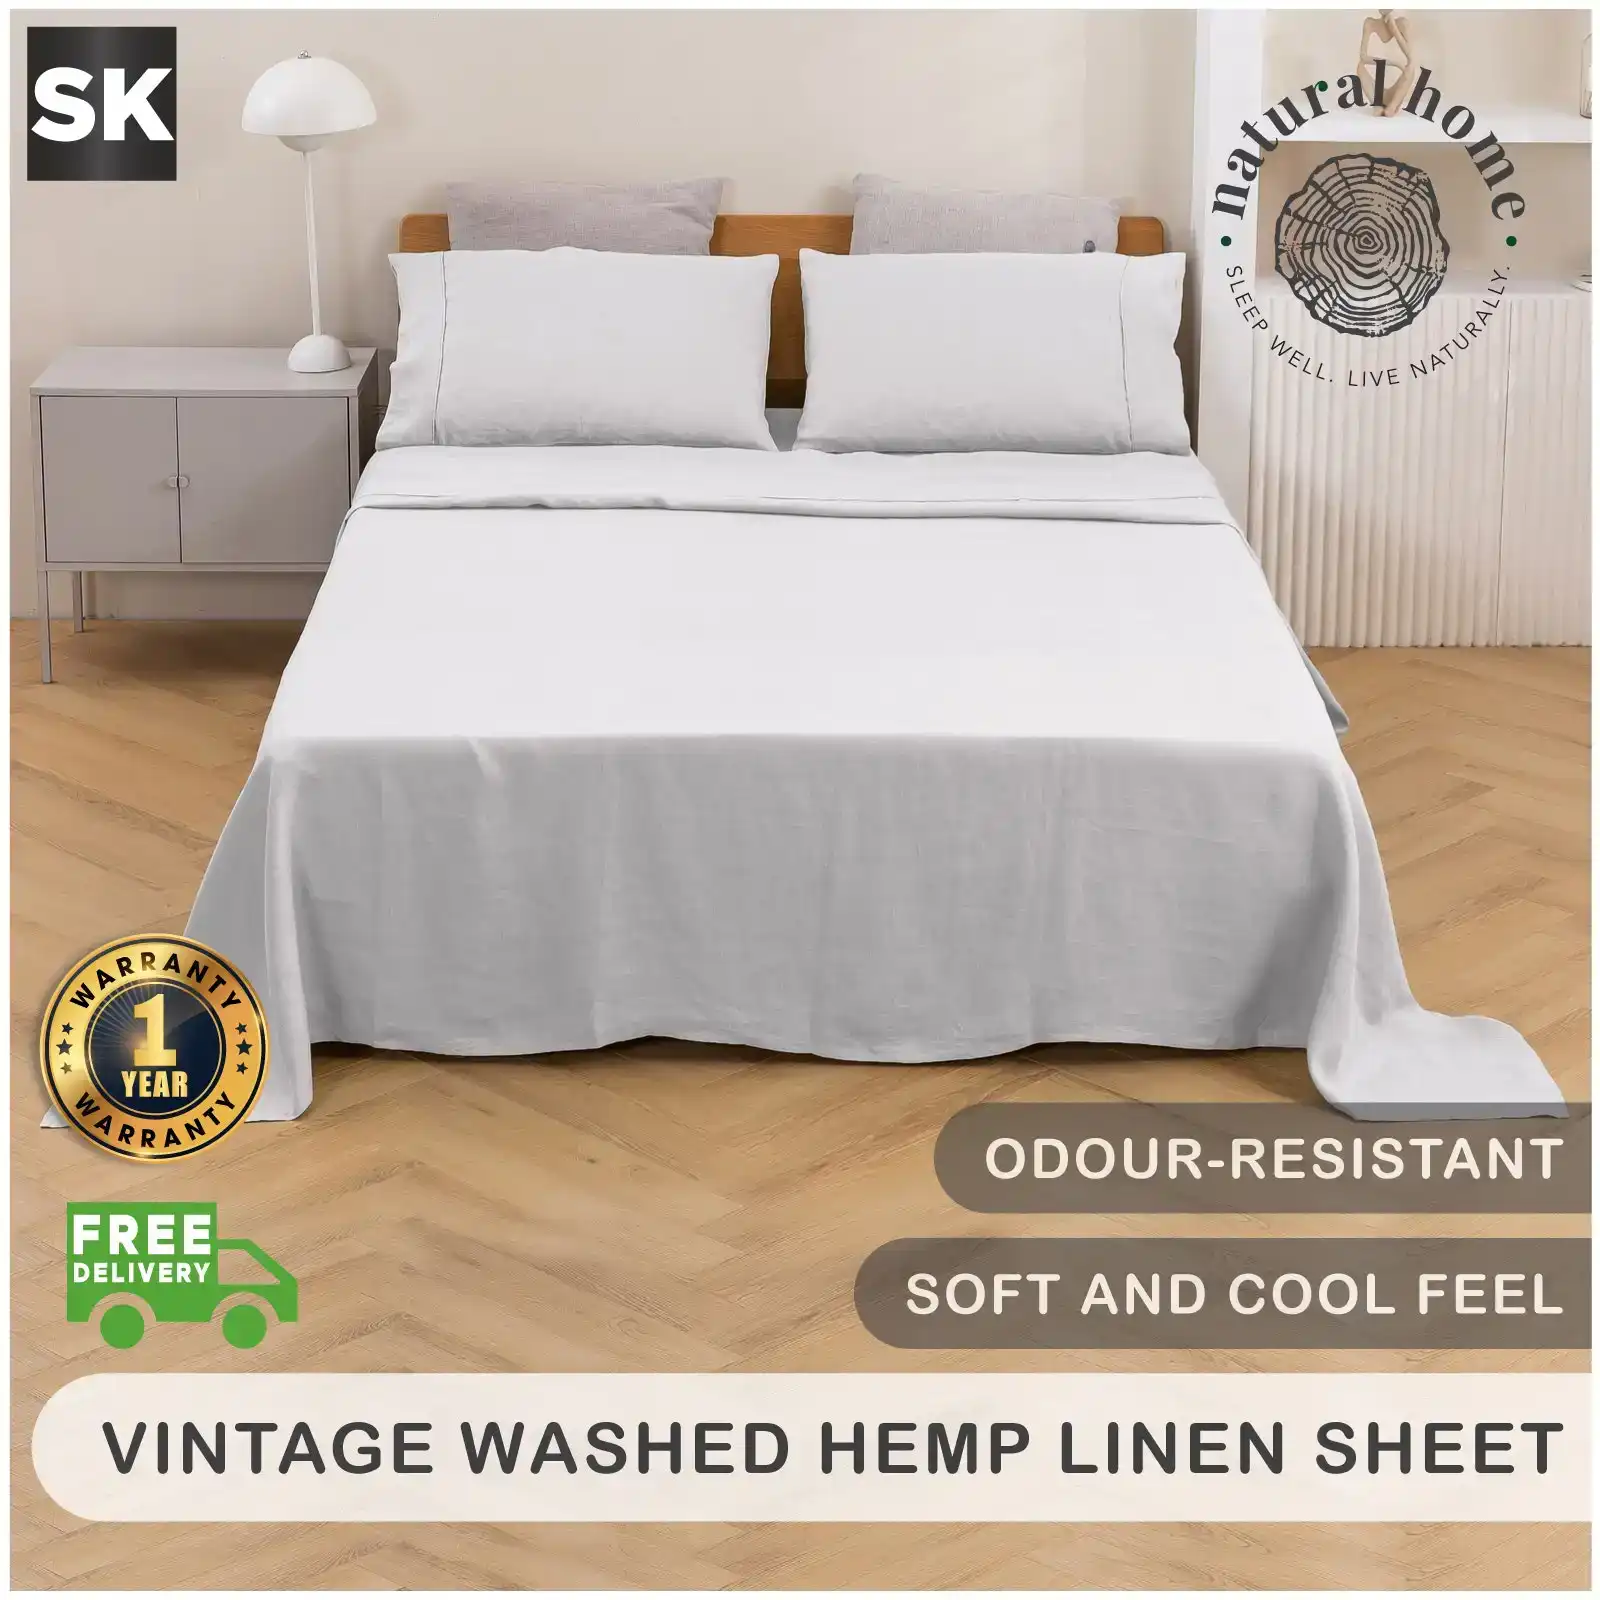 Natural Home Vintage Washed Hemp Linen Sheet Set Dove Grey Super King Bed